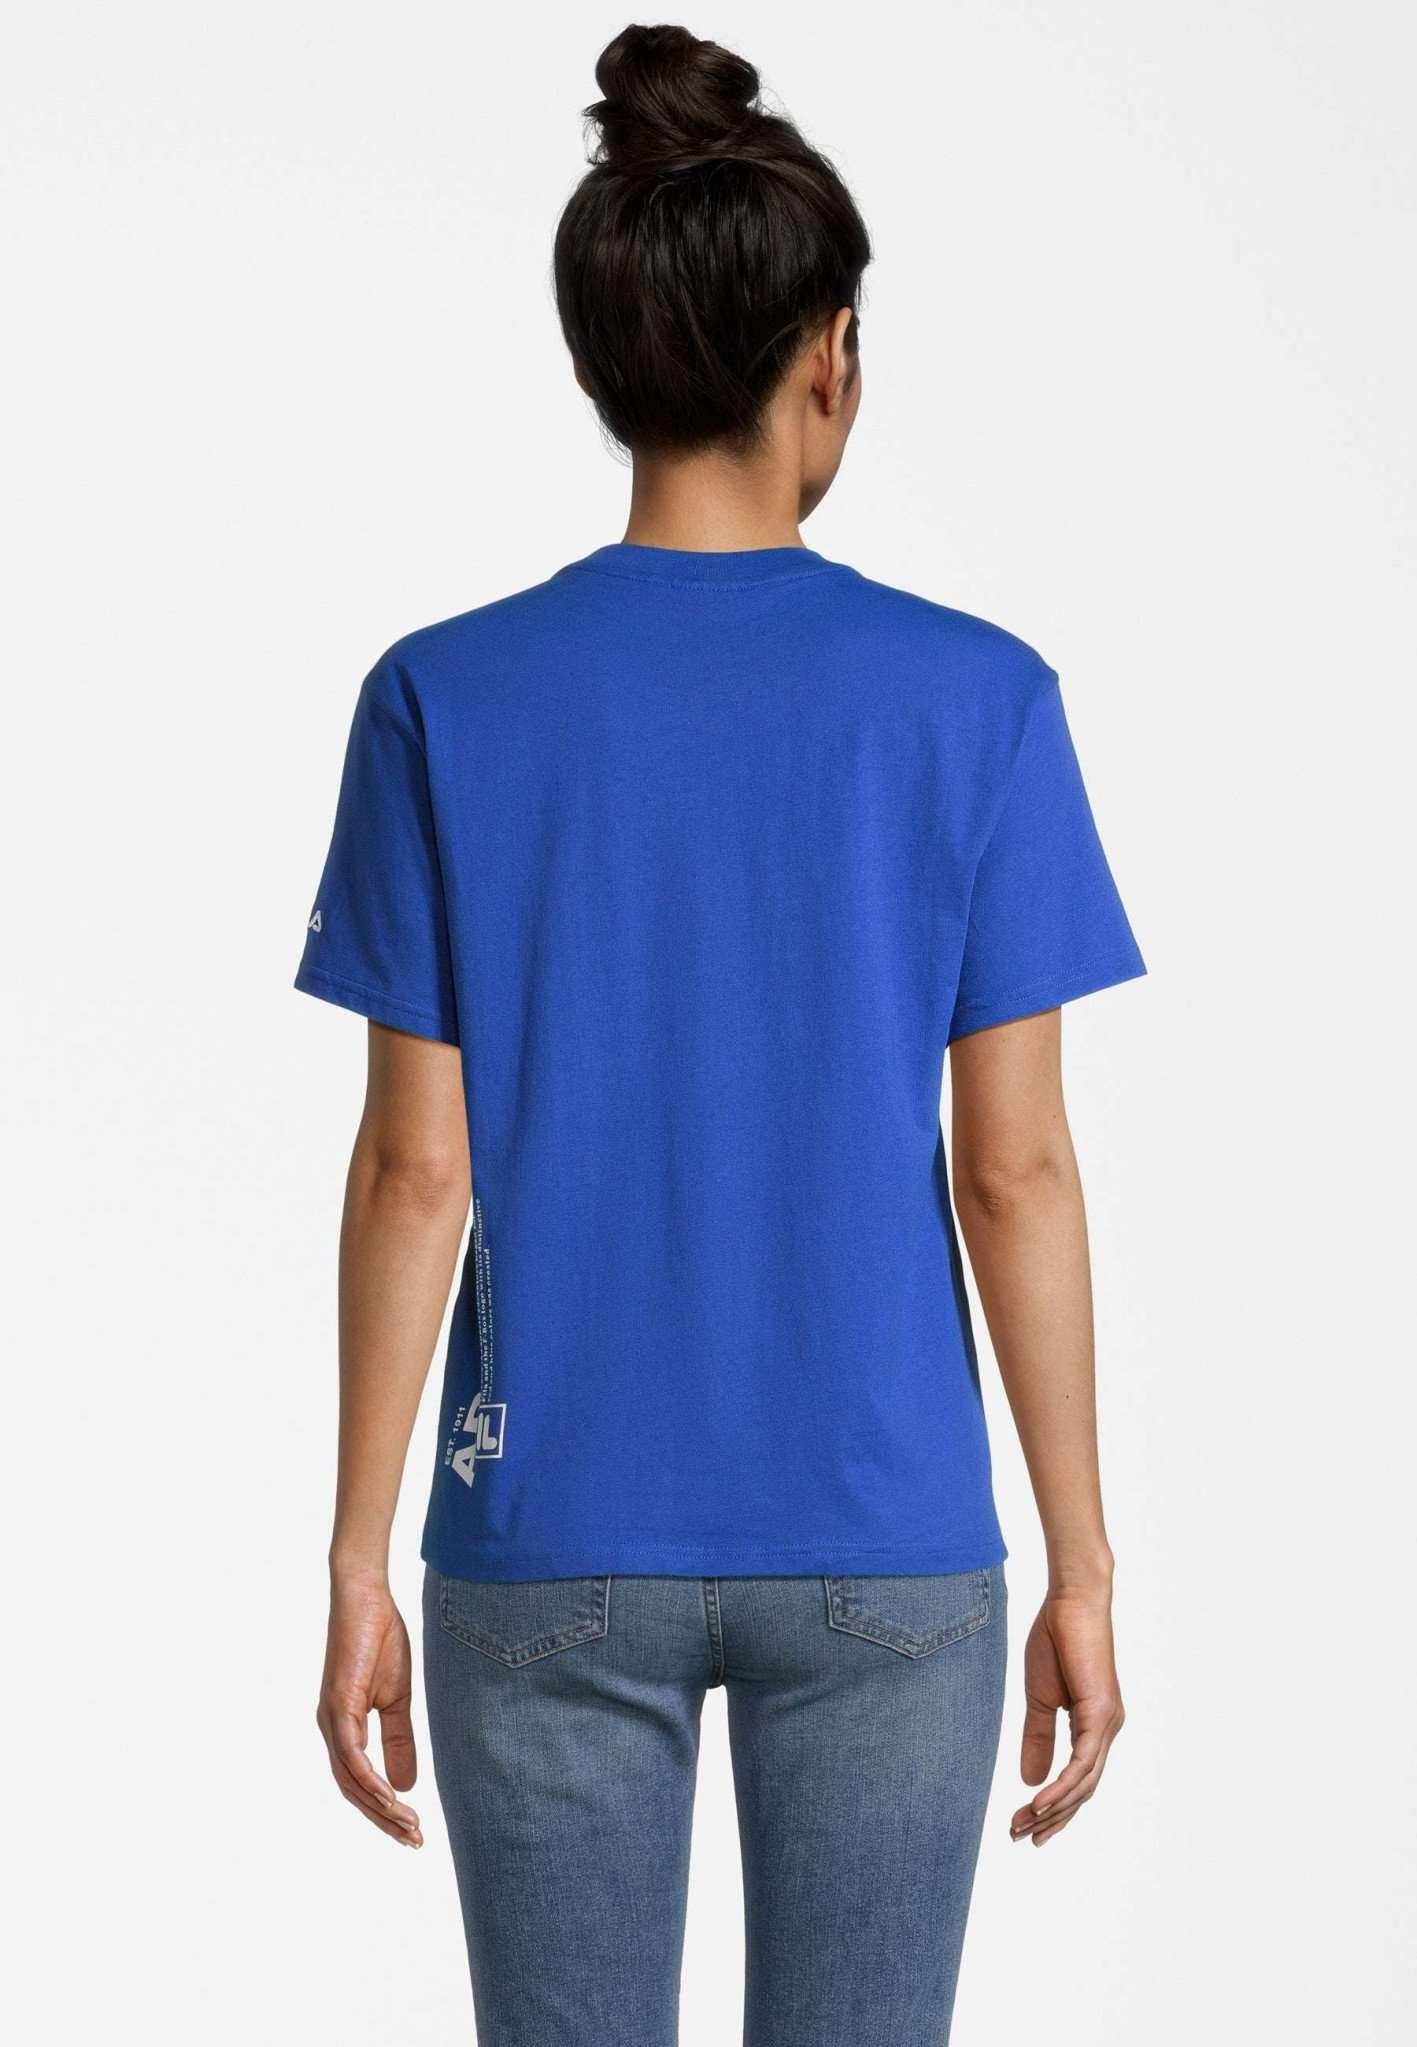 FILA  T-Shirt Beulich 